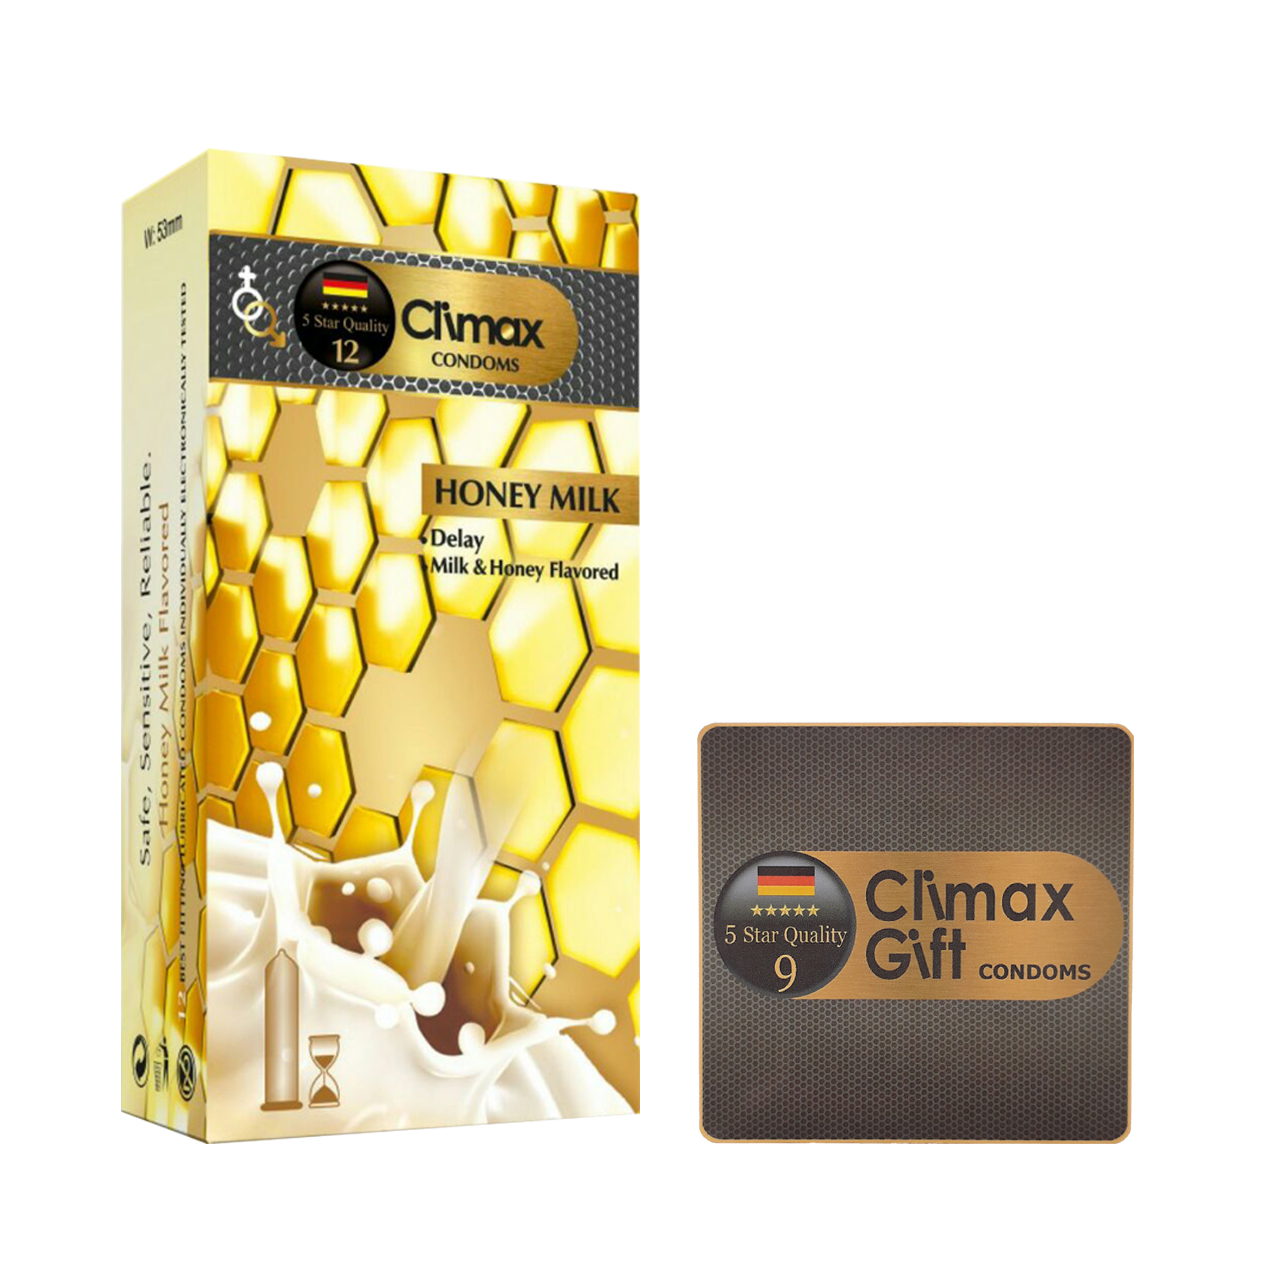 کاندوم کلایمکس مدل Honey milk بسته 12 عددی به همراه کاندوم مدل Gift